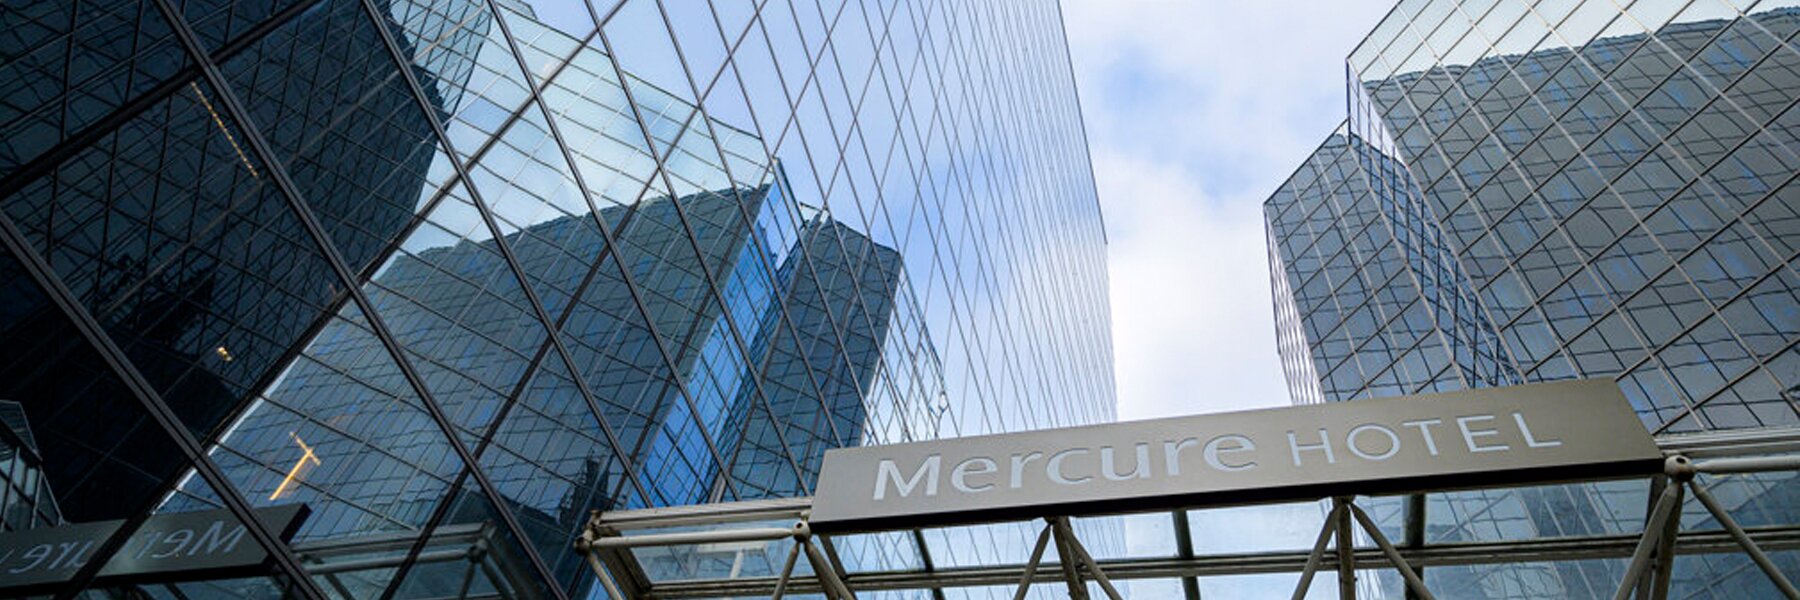 Alphatronics-Mercure-Hotel-Antwerpen-Banner-04.jpg